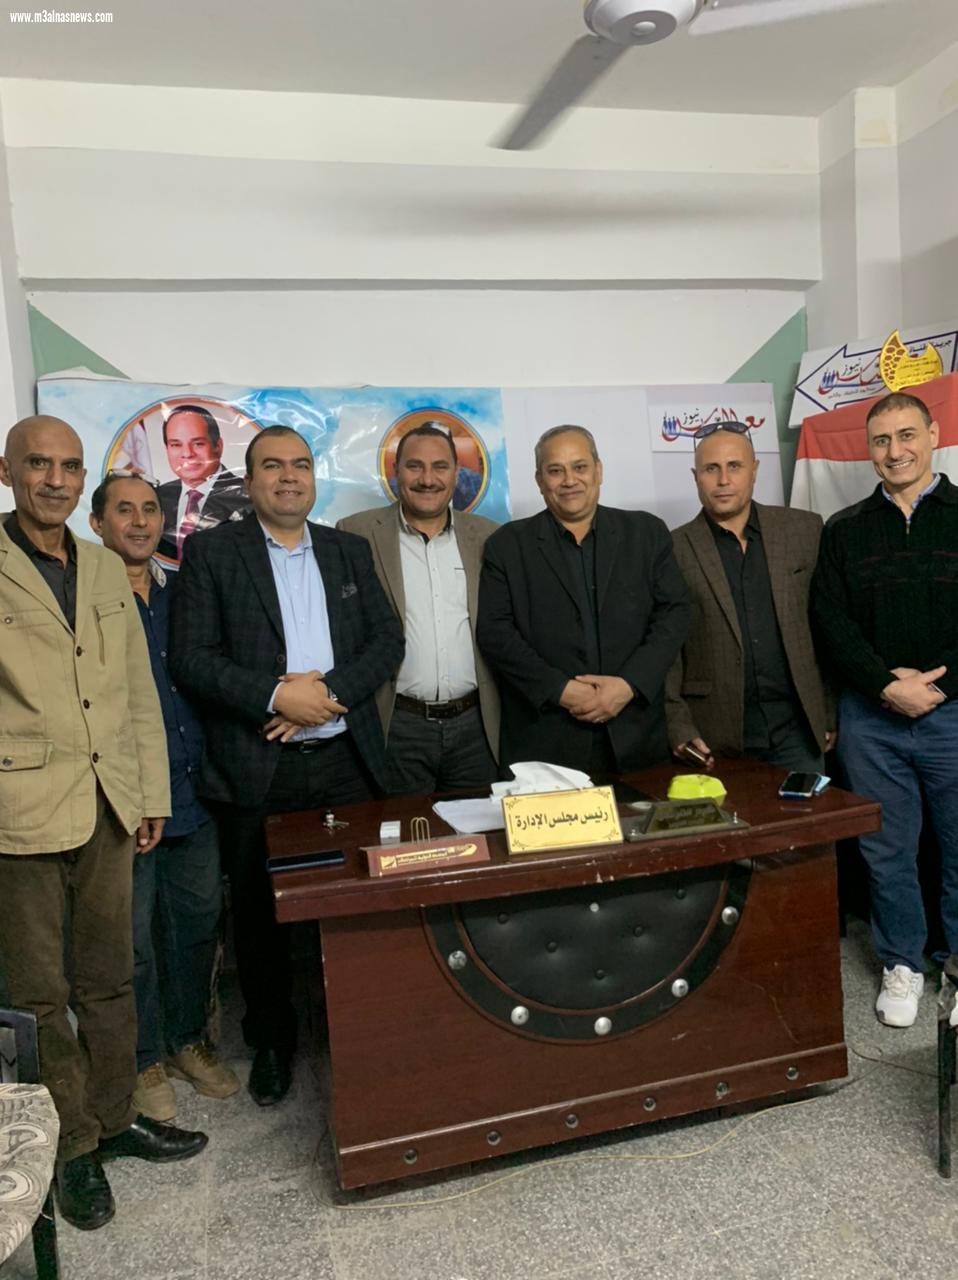 مجلس إدارة مع الناس يوافق على فتح مكتب للجريدة بمحافظة الغربية بقيادة المستشار عماد شلبى